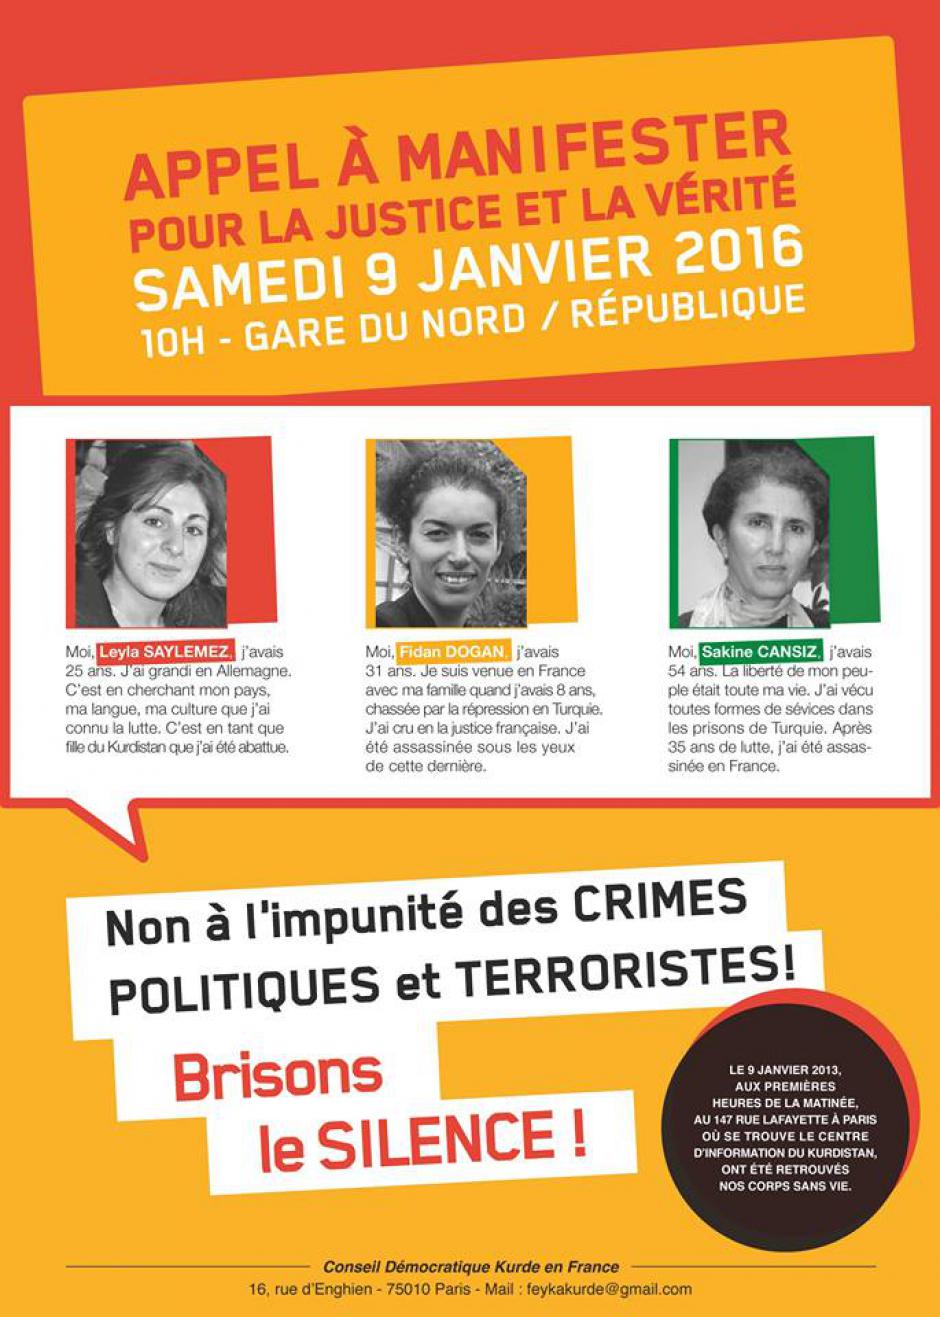 9 janvier, Paris - Conseil démocratique kurde de France-Manifestation « Justice et vérité pour les crimes de Leyla, Fidan et Sakine »